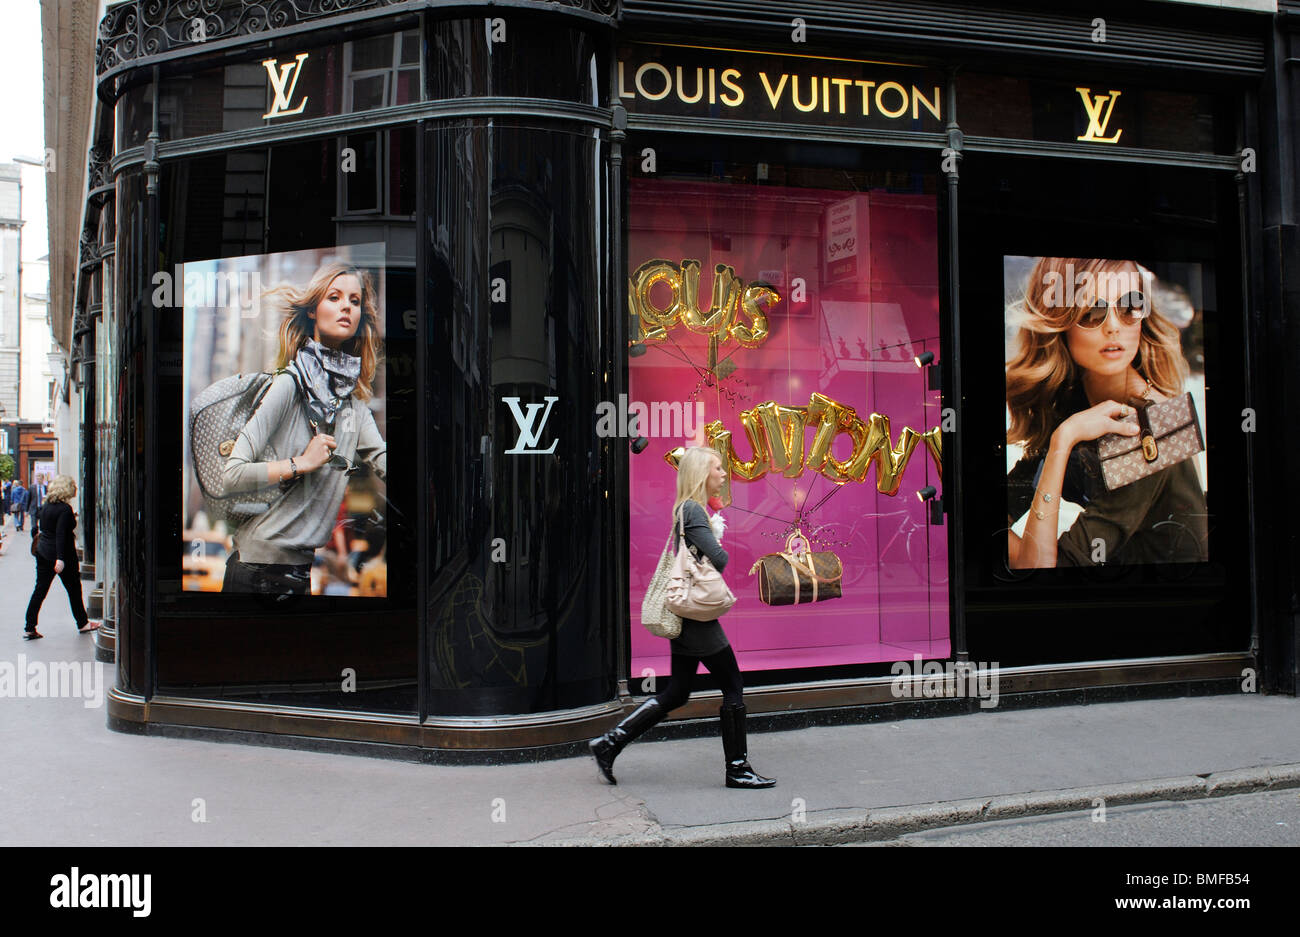 Dublin, Ireland - December 30, 2019: Facade of a Louis Vuitton